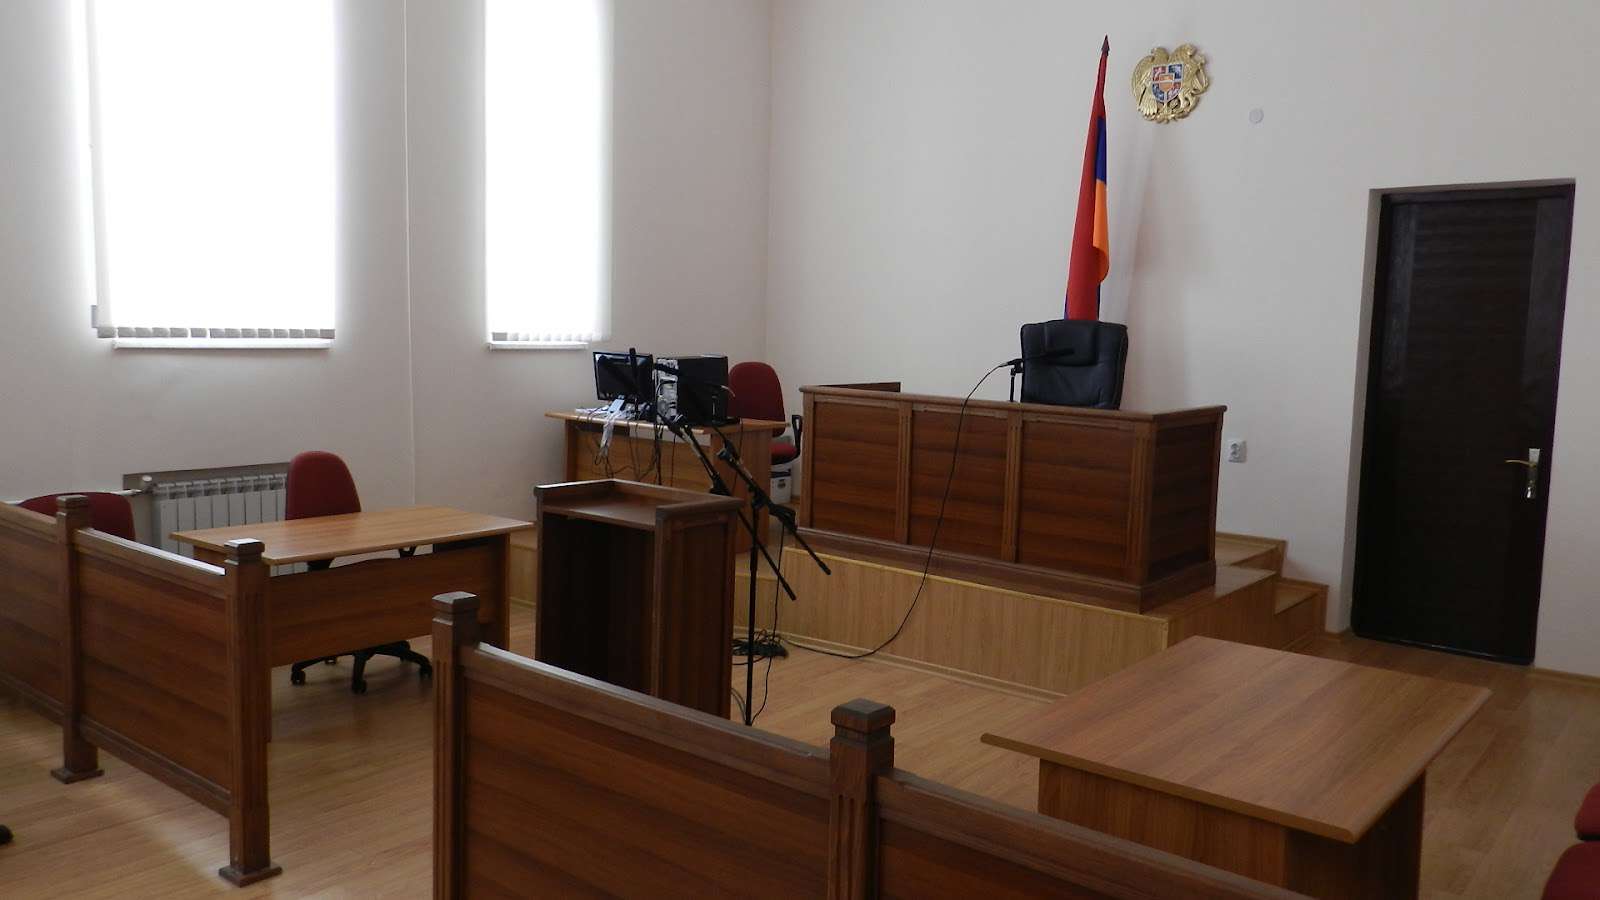 Հայաստանի 51 դատական նստավայրերից 9-ը կփակվեն